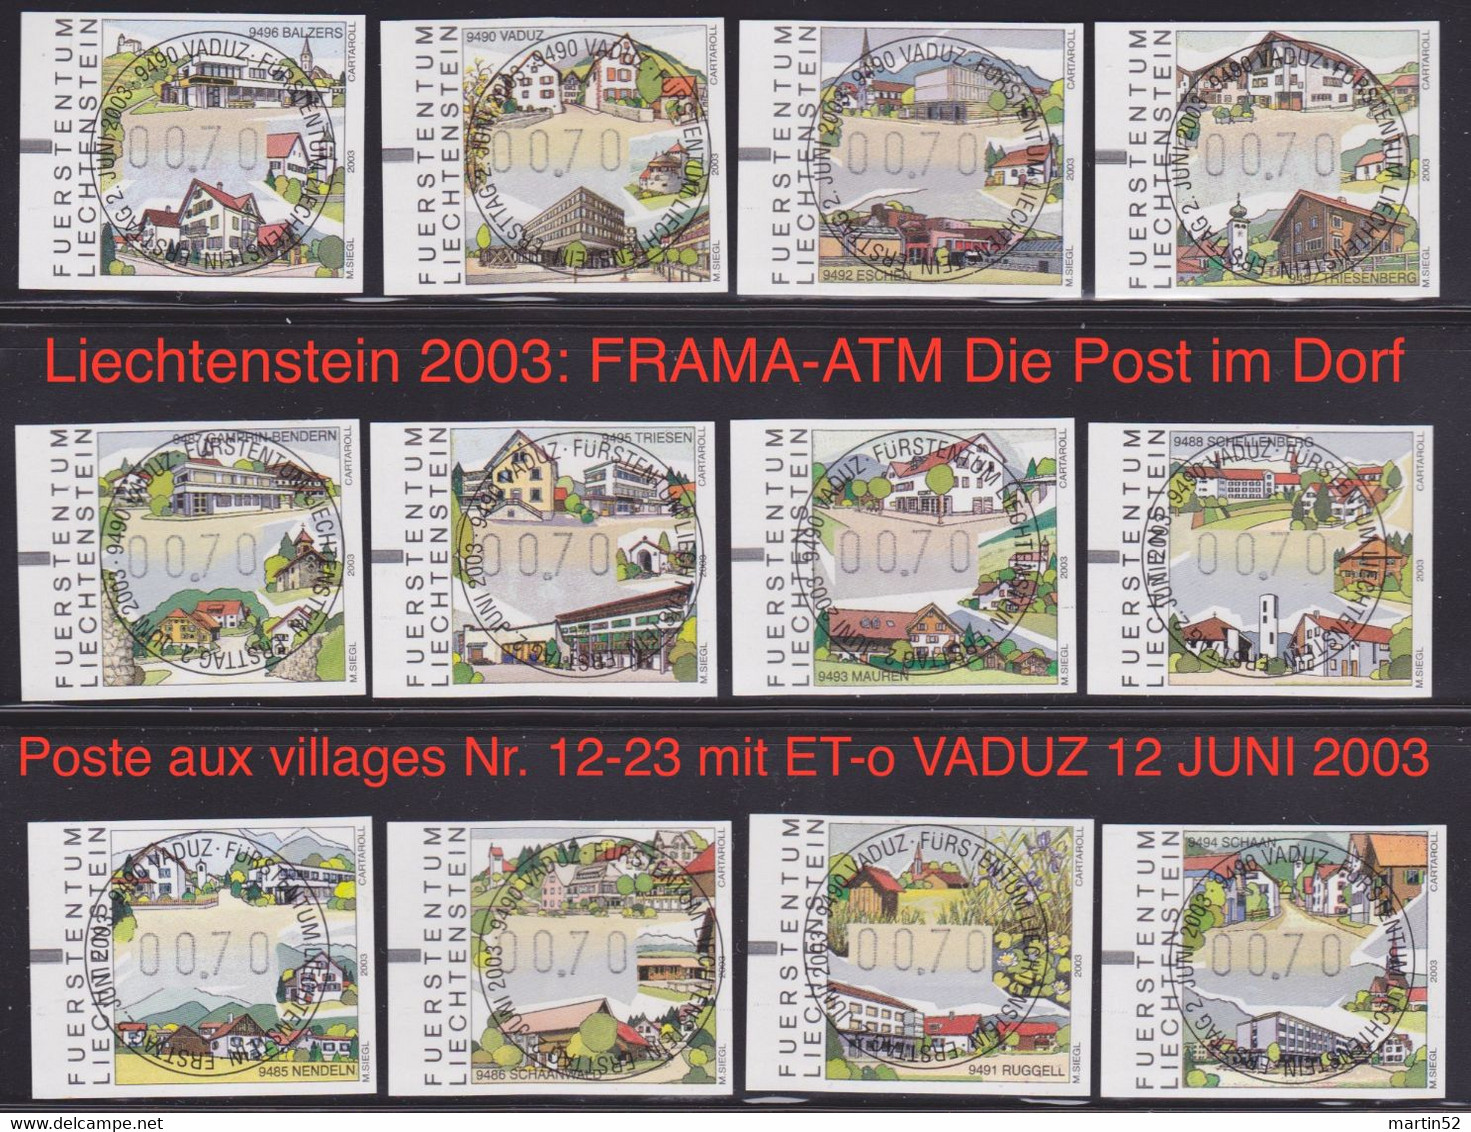 Liechtenstein 2003: FRAMA-ATM Die Post Im Dorf - Poste Aux Villages Nr. 12-23 Mit ET-o VADUZ 12 JUNI 2003 (Zu CHF 12.00) - Maschinenstempel (EMA)